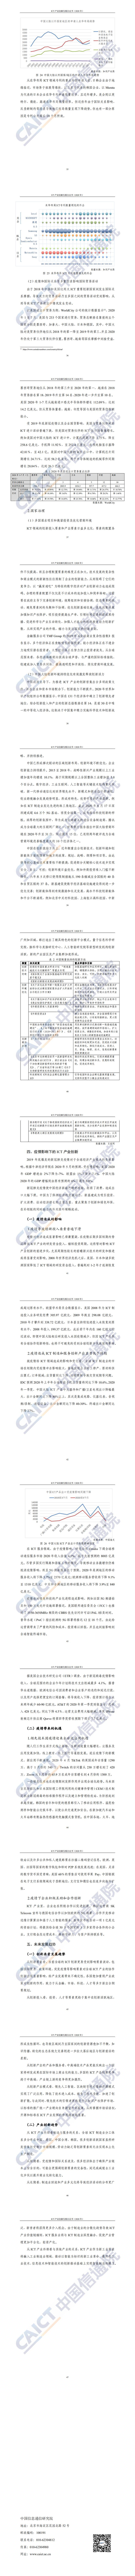 【中国信通院】ICT产业创新发展白皮书（2020 年）_2.jpg